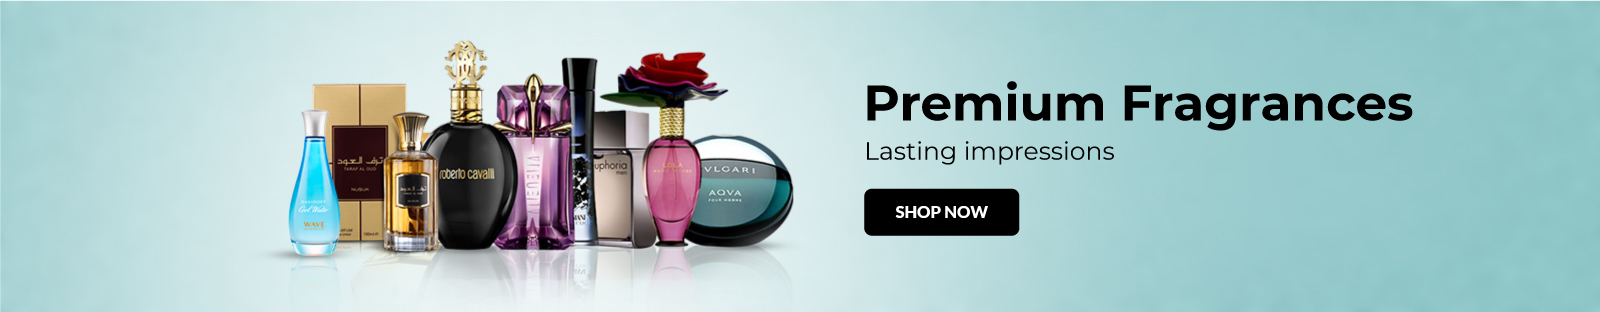 Premium-Fragrances